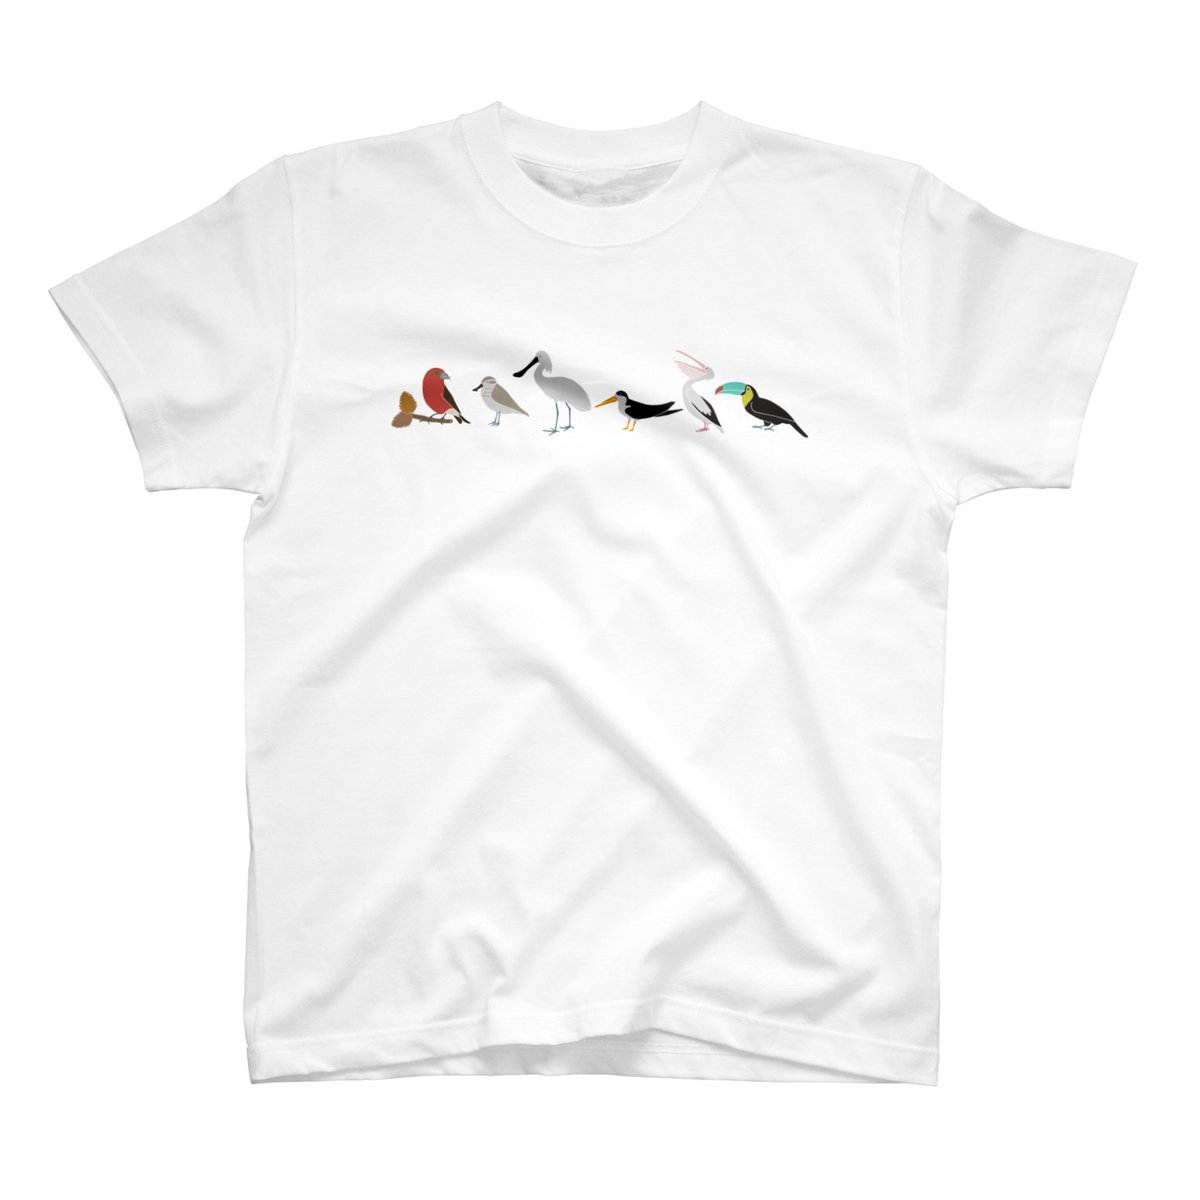 鳥さんが好きで、Tシャツ色々作っているので見てもらえたら嬉しいな。

https://t.co/9YZ6FeZFDi

#野鳥
#鳥が好き 